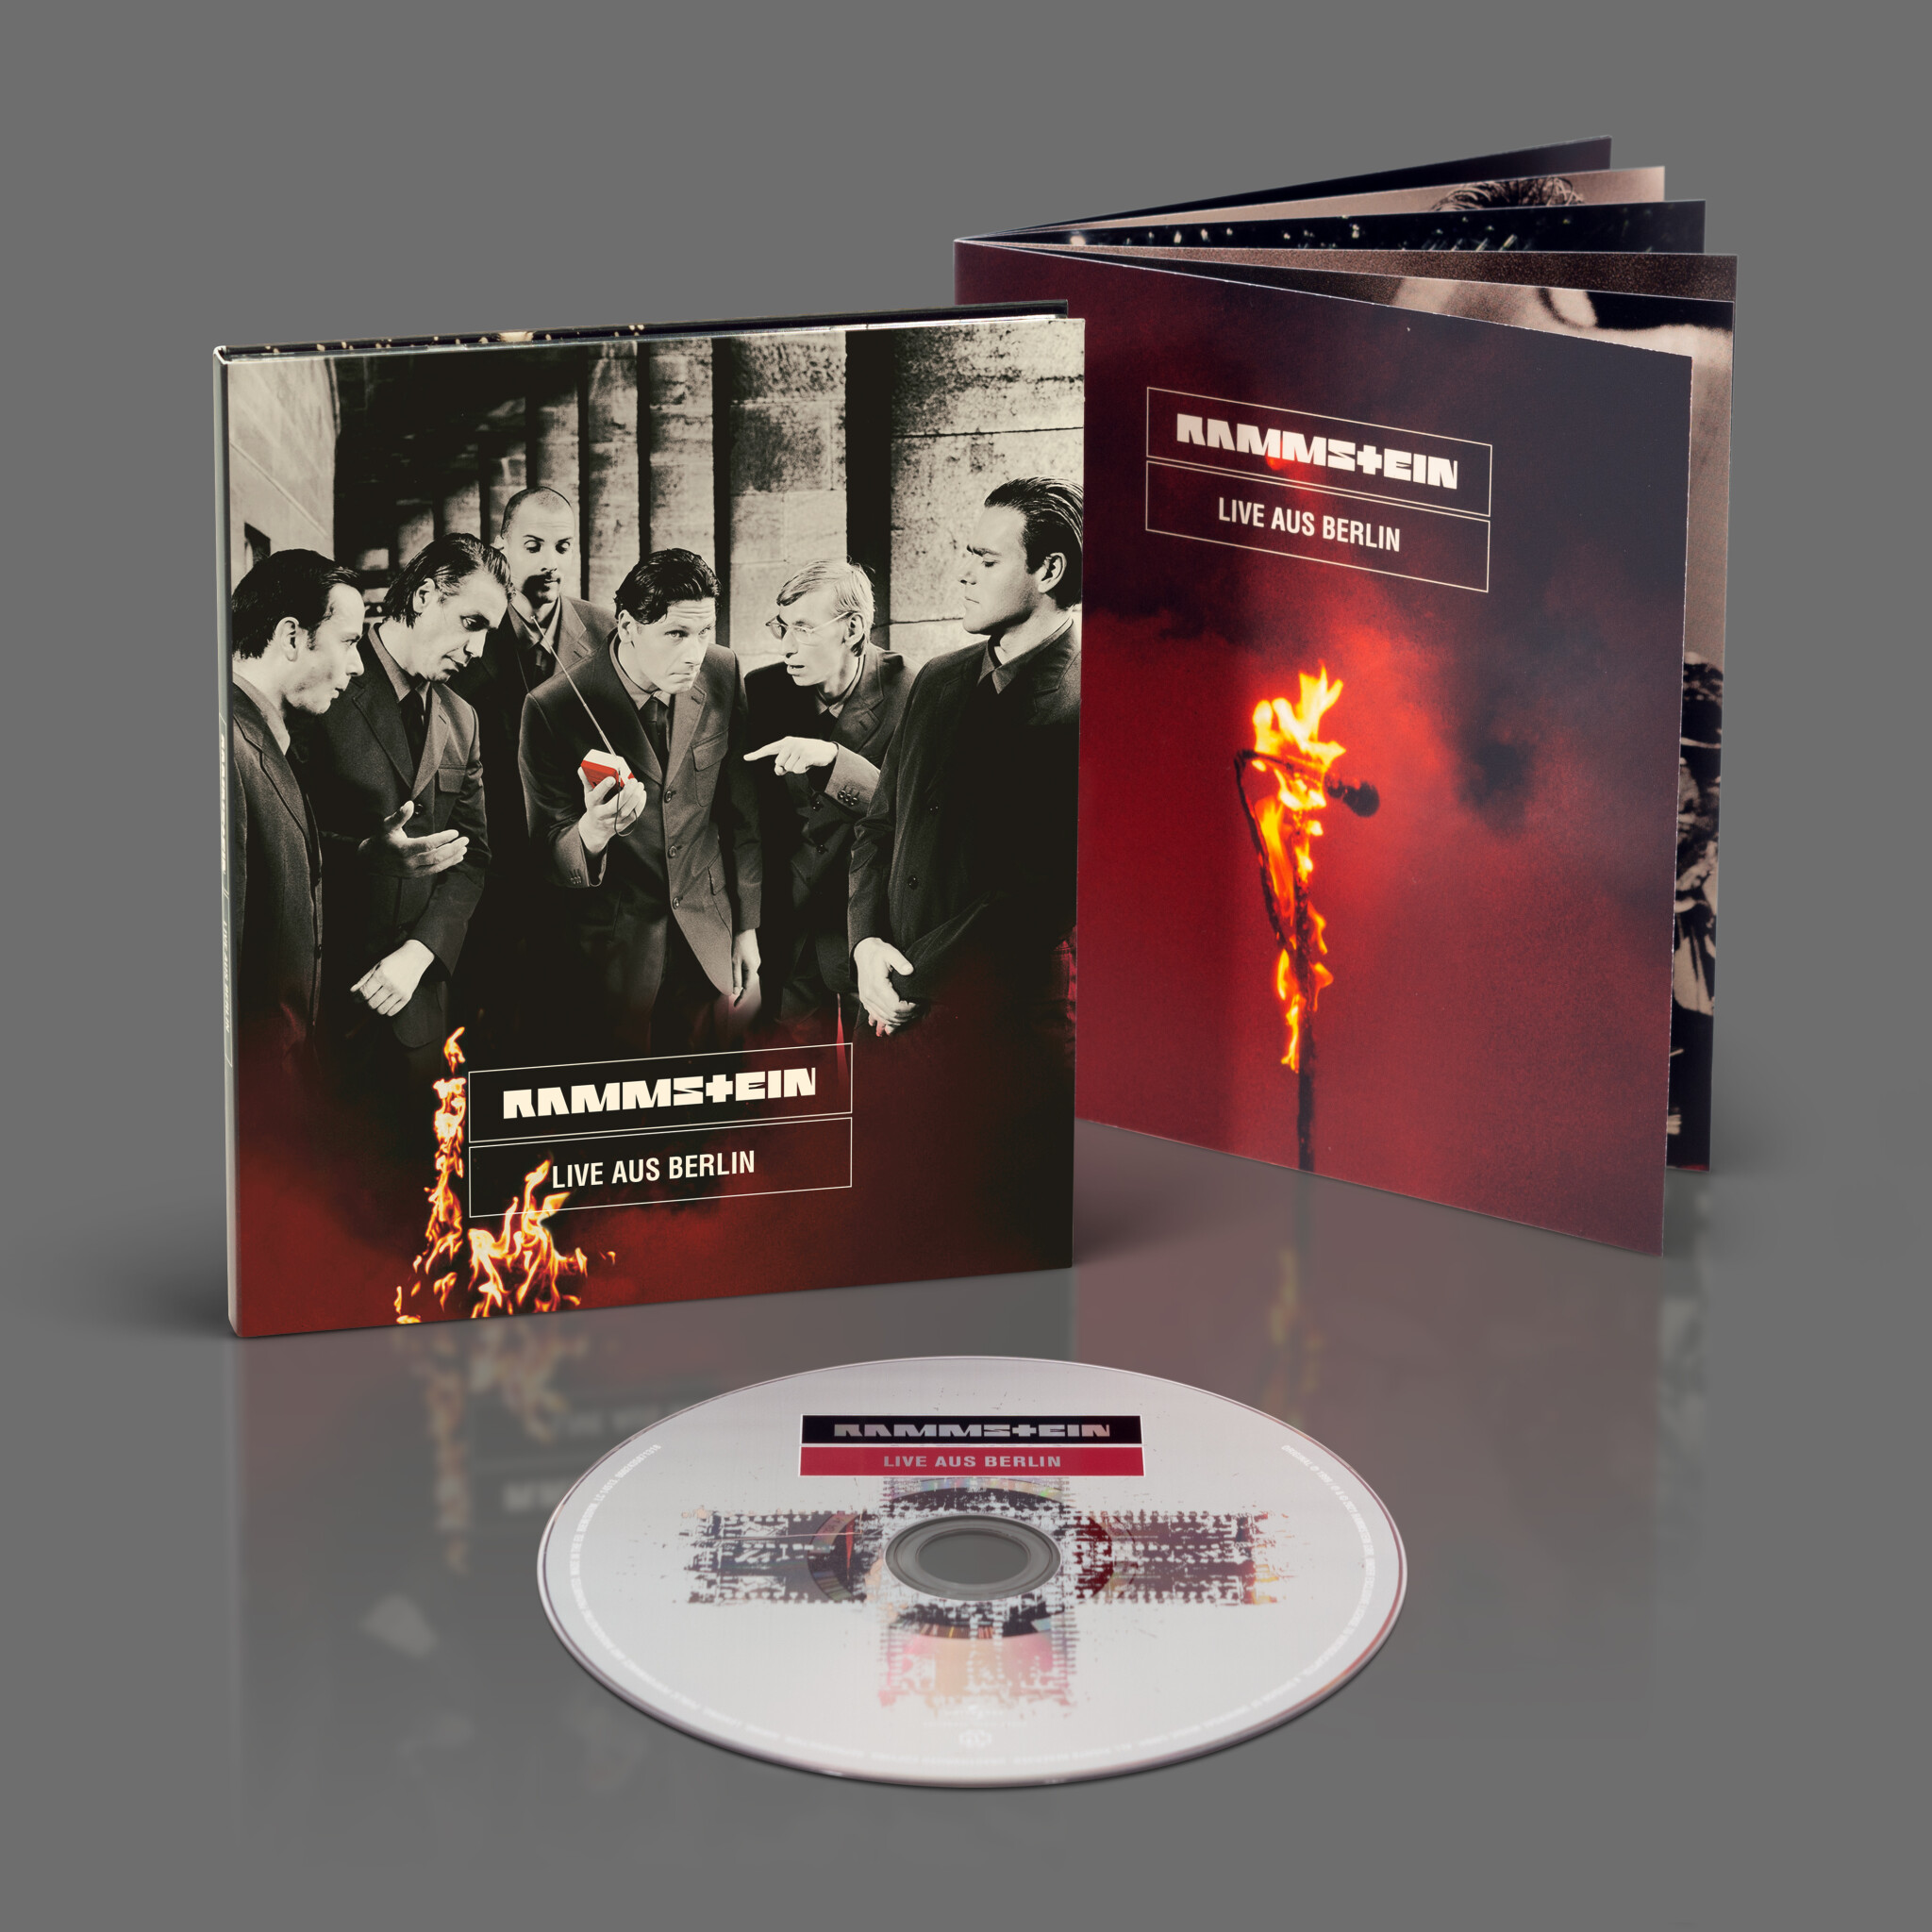 Rammstein Konzert-Album ”Live aus Berlin”, CD